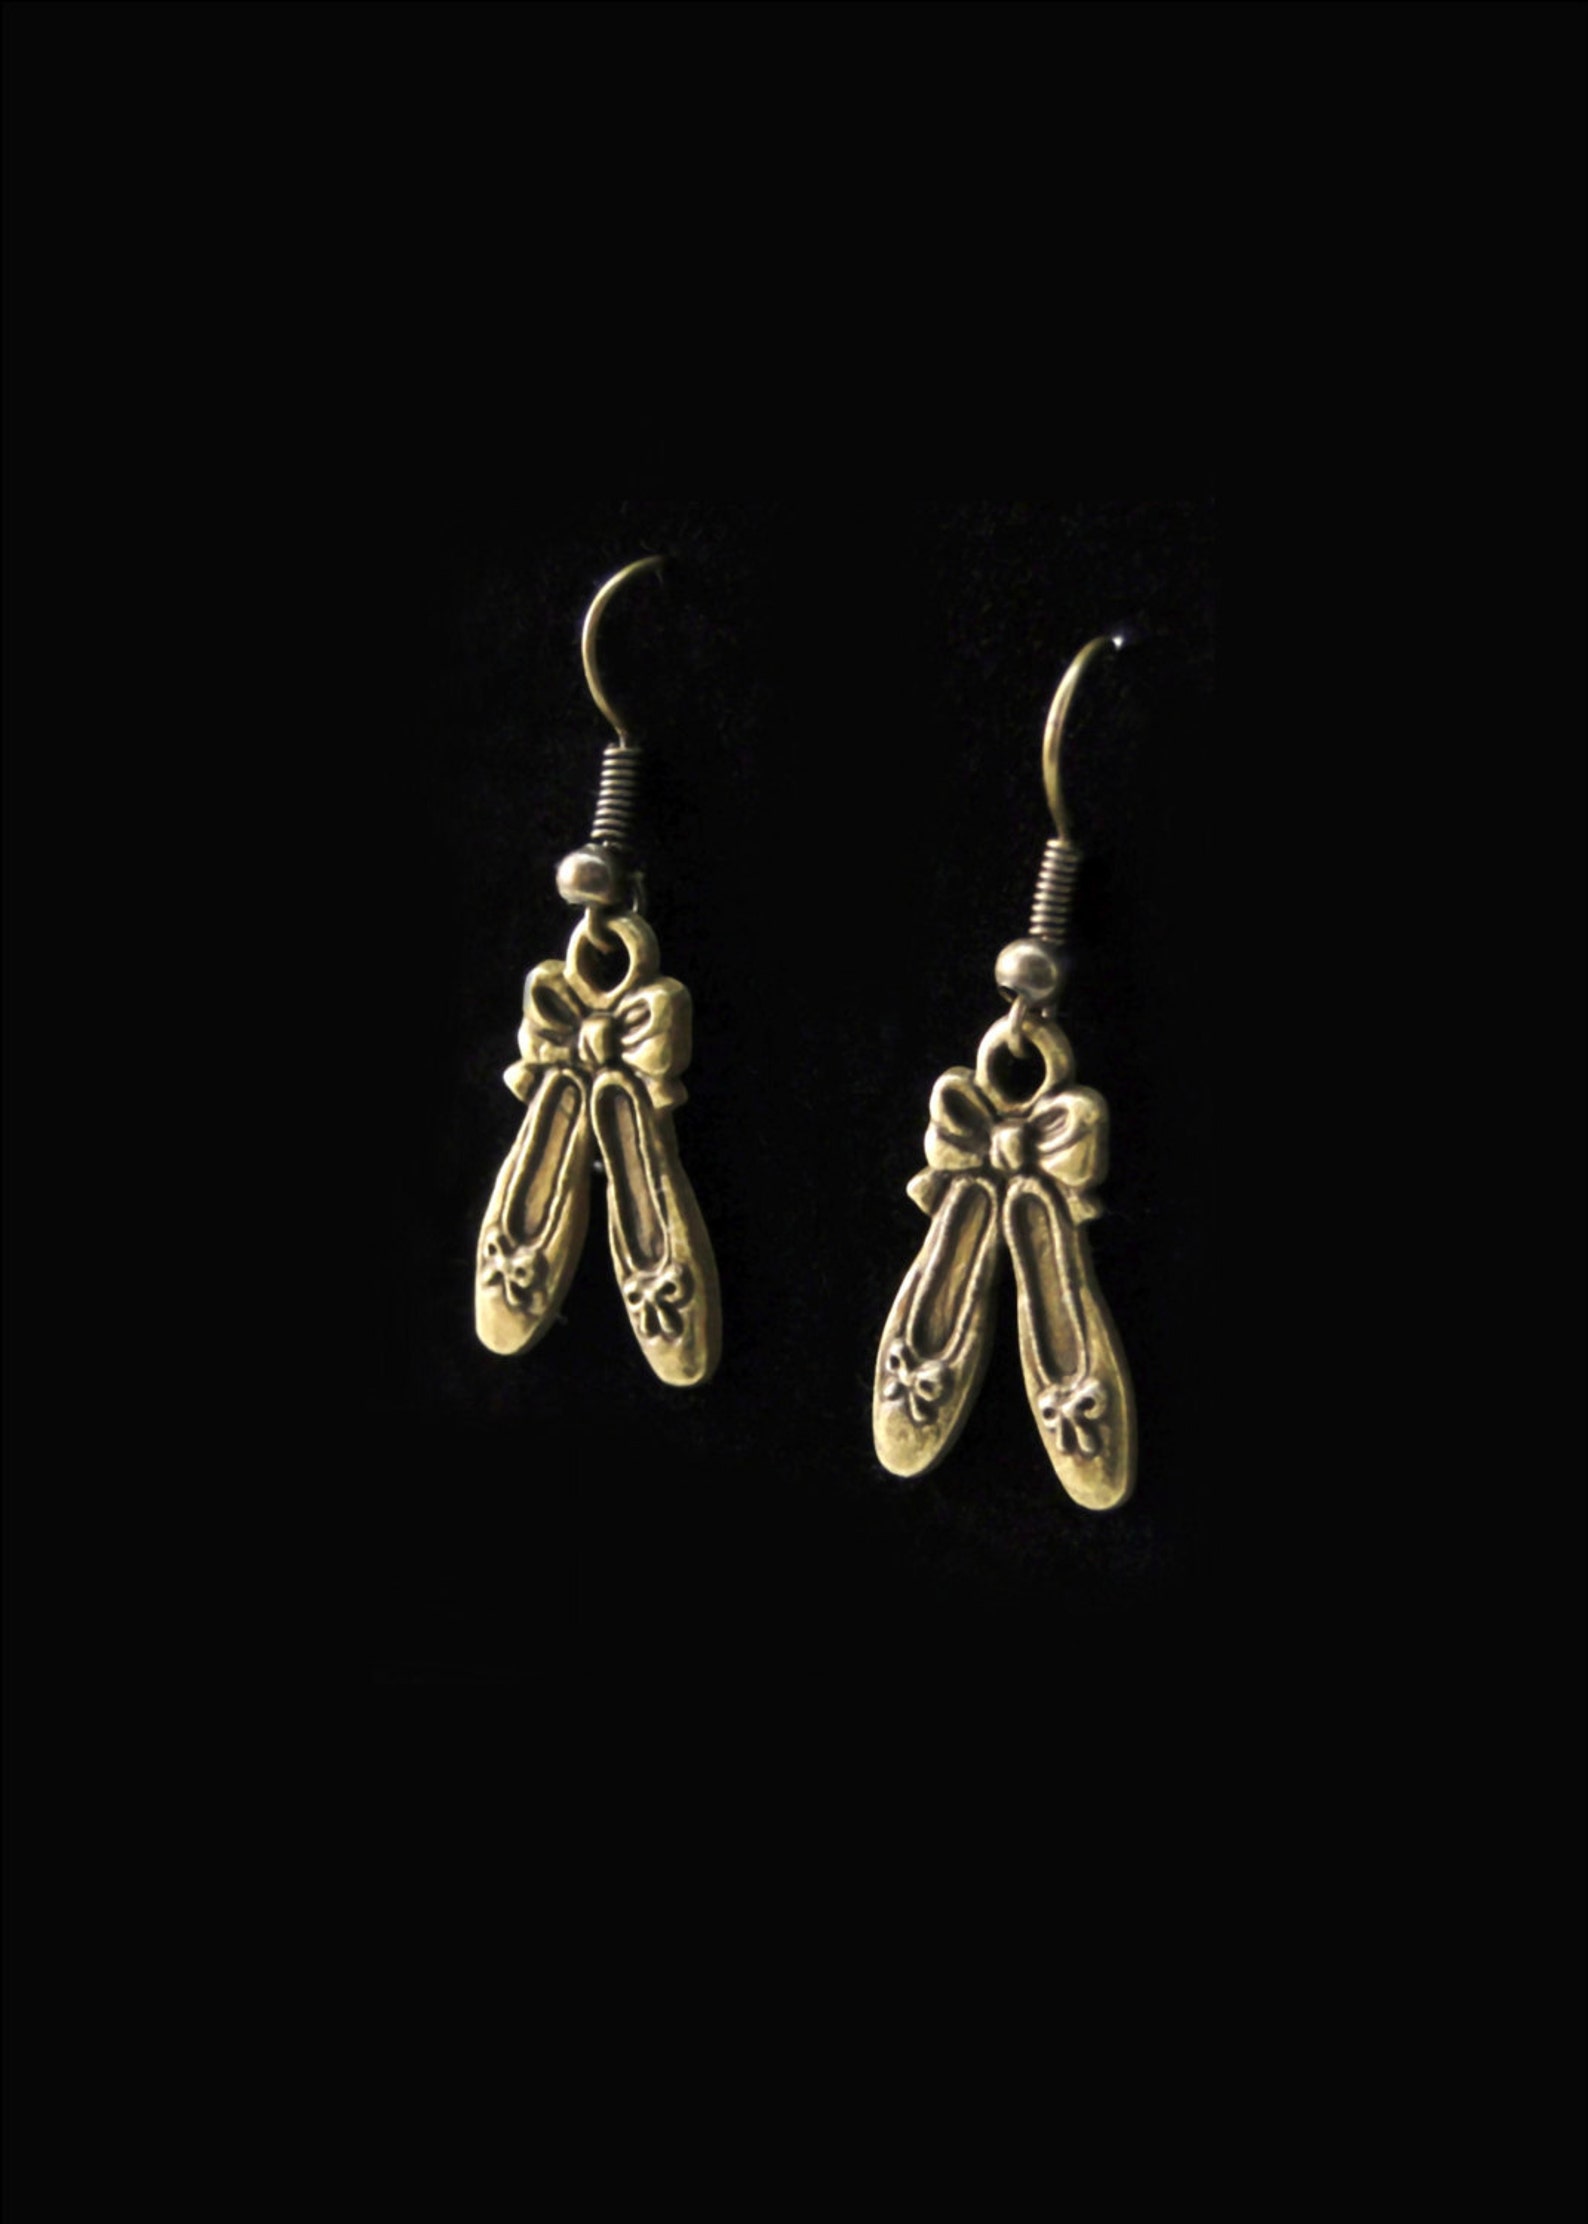 ballet slipper dangle earrings ballerina dancing shoes hook earring antique brass jewelry fashion jewelry dance jewelry dancer g